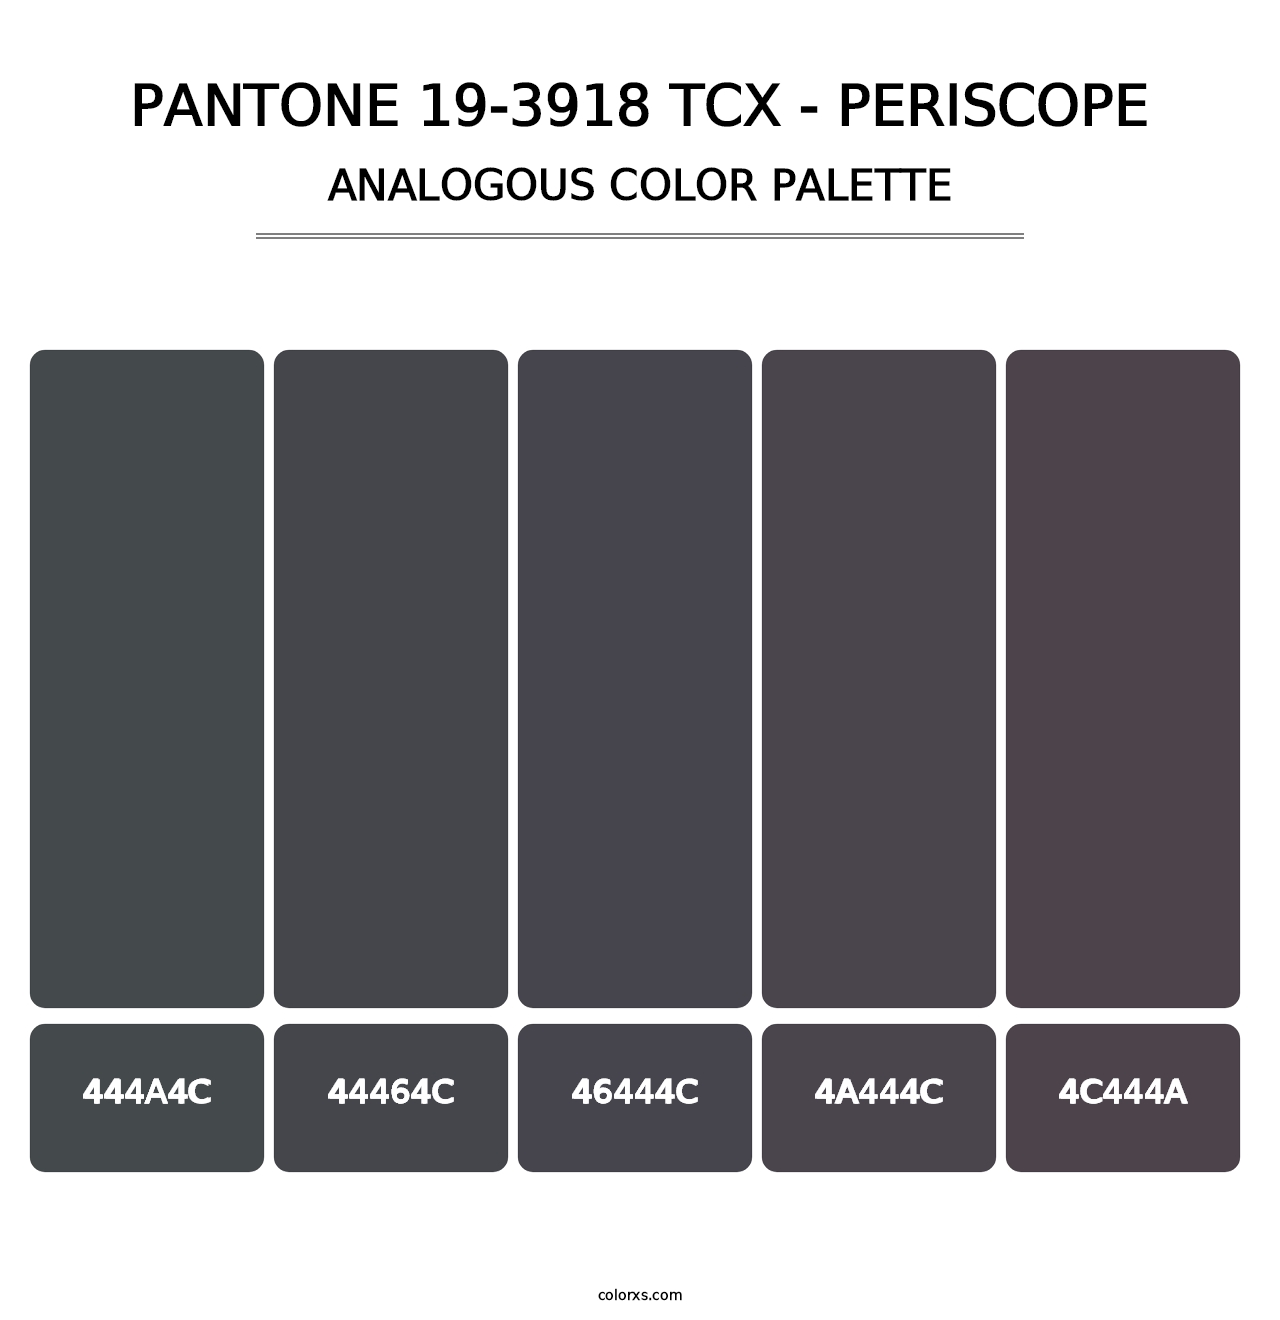 PANTONE 19-3918 TCX - Periscope - Analogous Color Palette